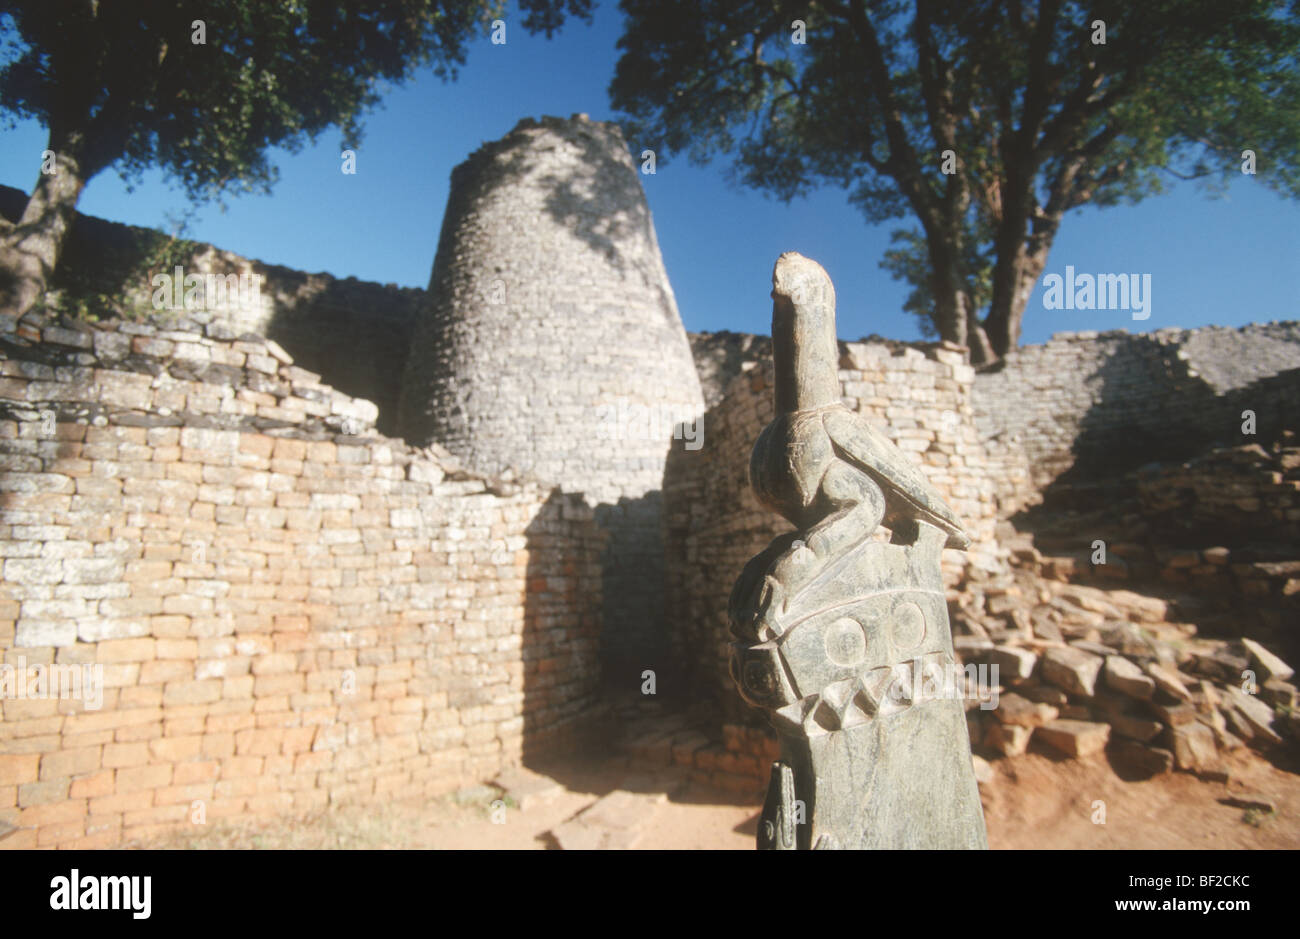 Simbabwe-Vogel, Great Zimbabwe Ruinen, Simbabwe Stockfoto